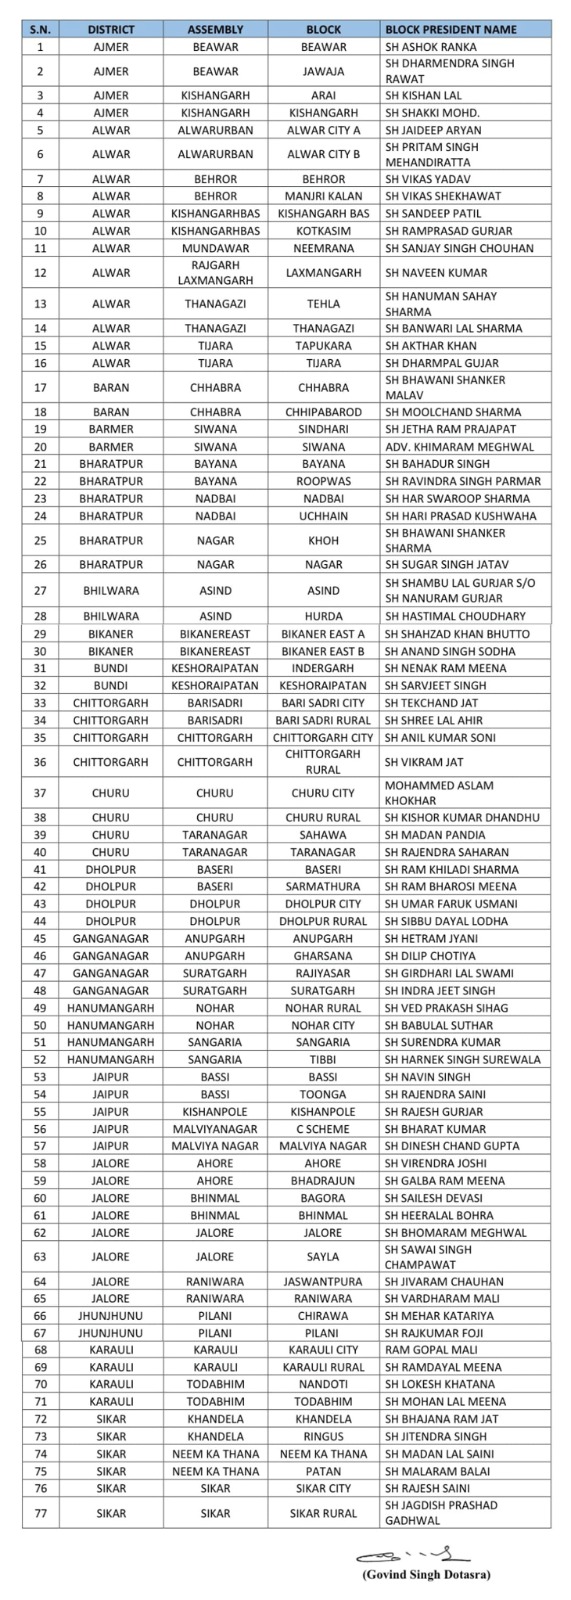 Rajasthan Congress Block President List, Govind Singh Dotasra, Sukhjinder Randhawa, Rajasthan Congress, TIS Media, Rajasthan News, 